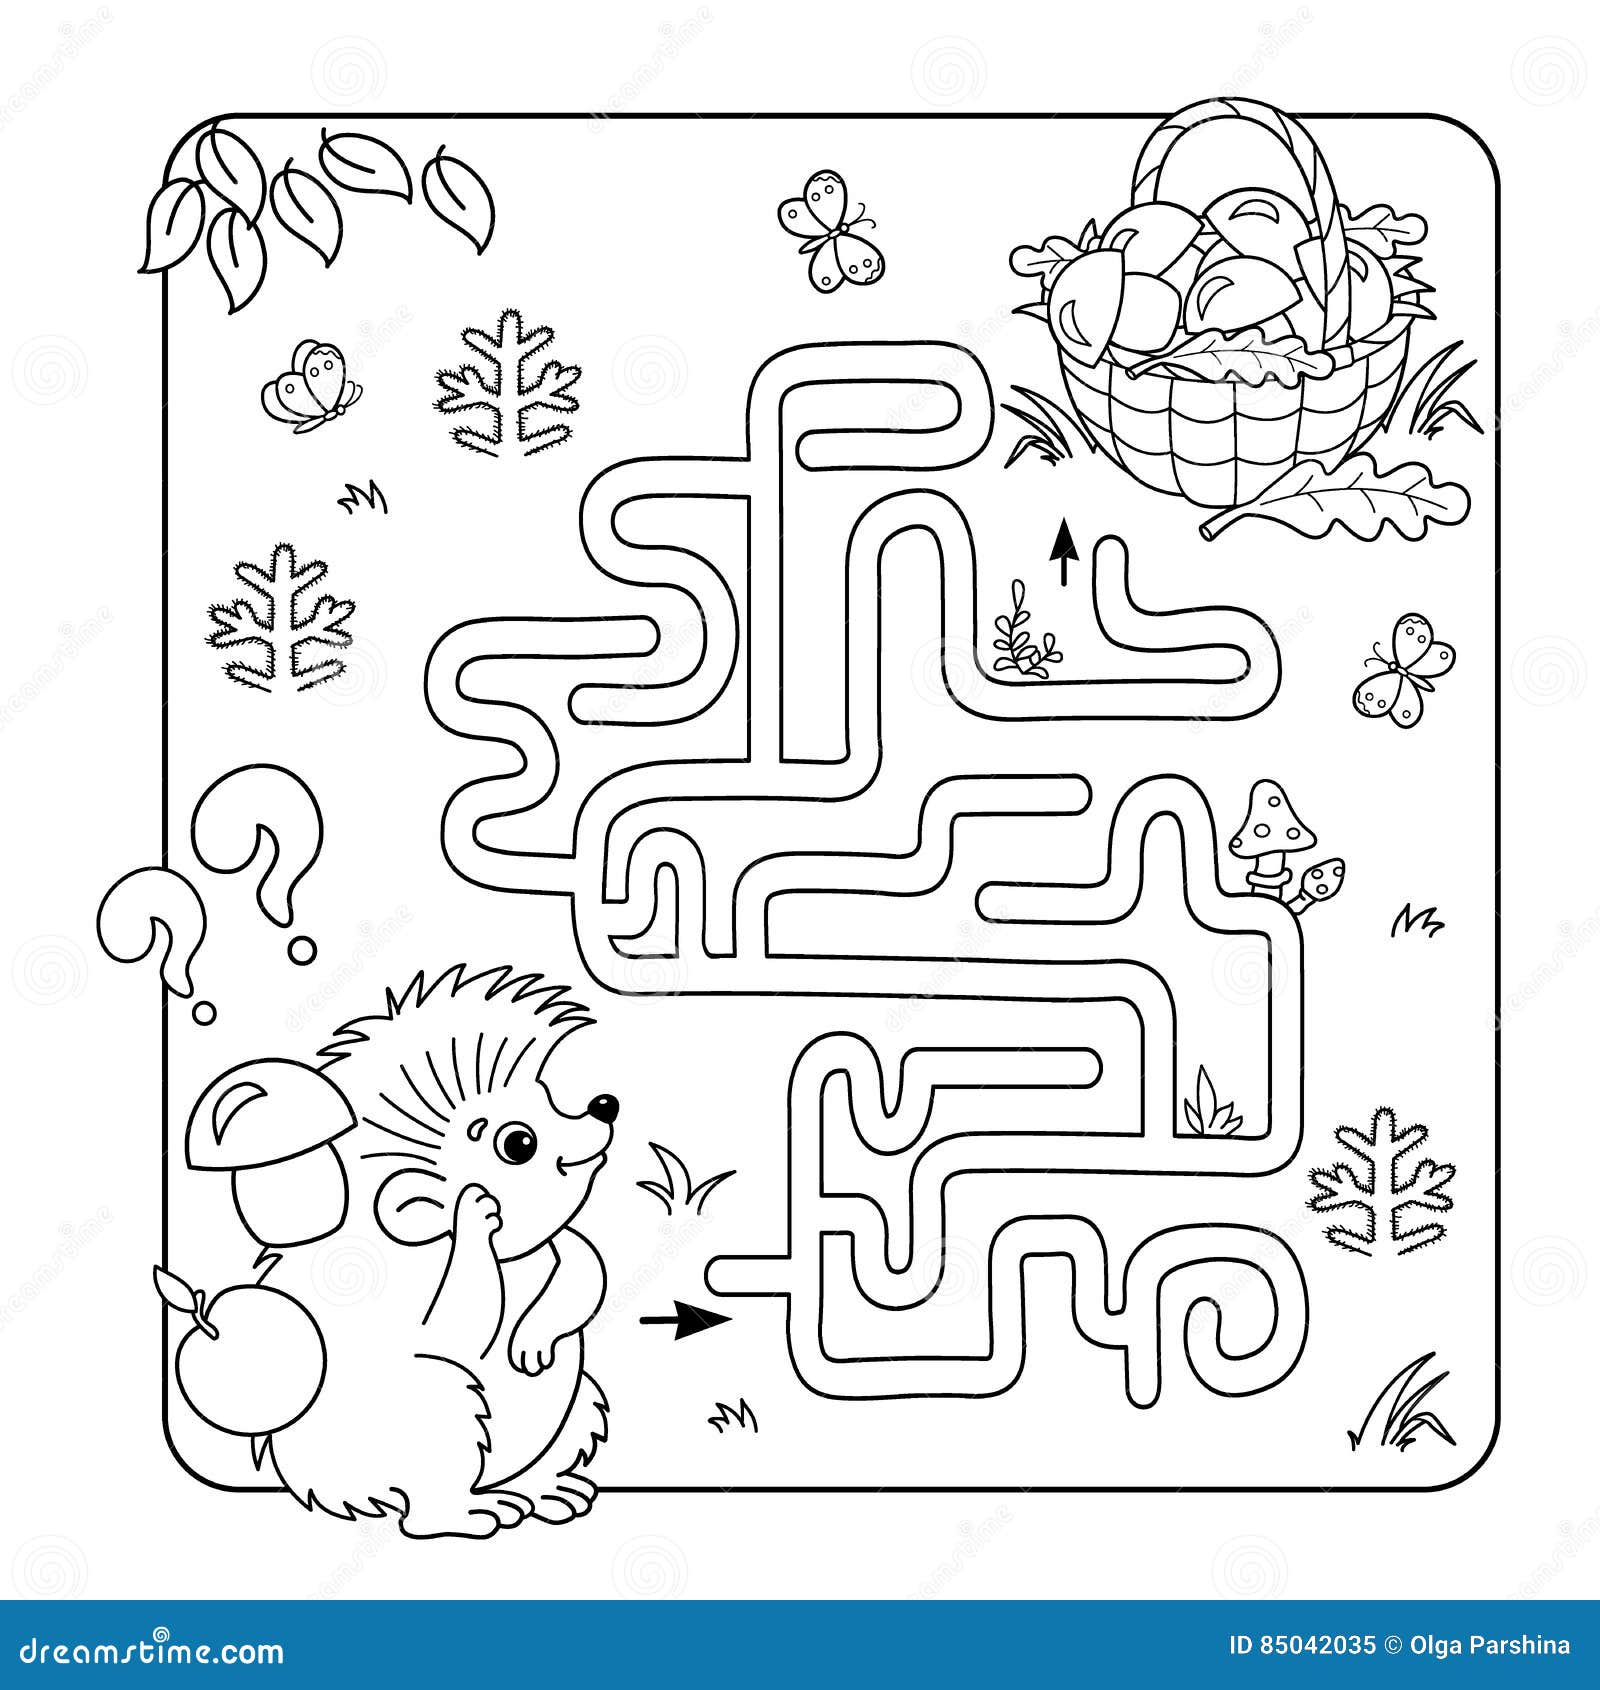 Jogo de labirinto de desenho animado educação para crianças ajuda